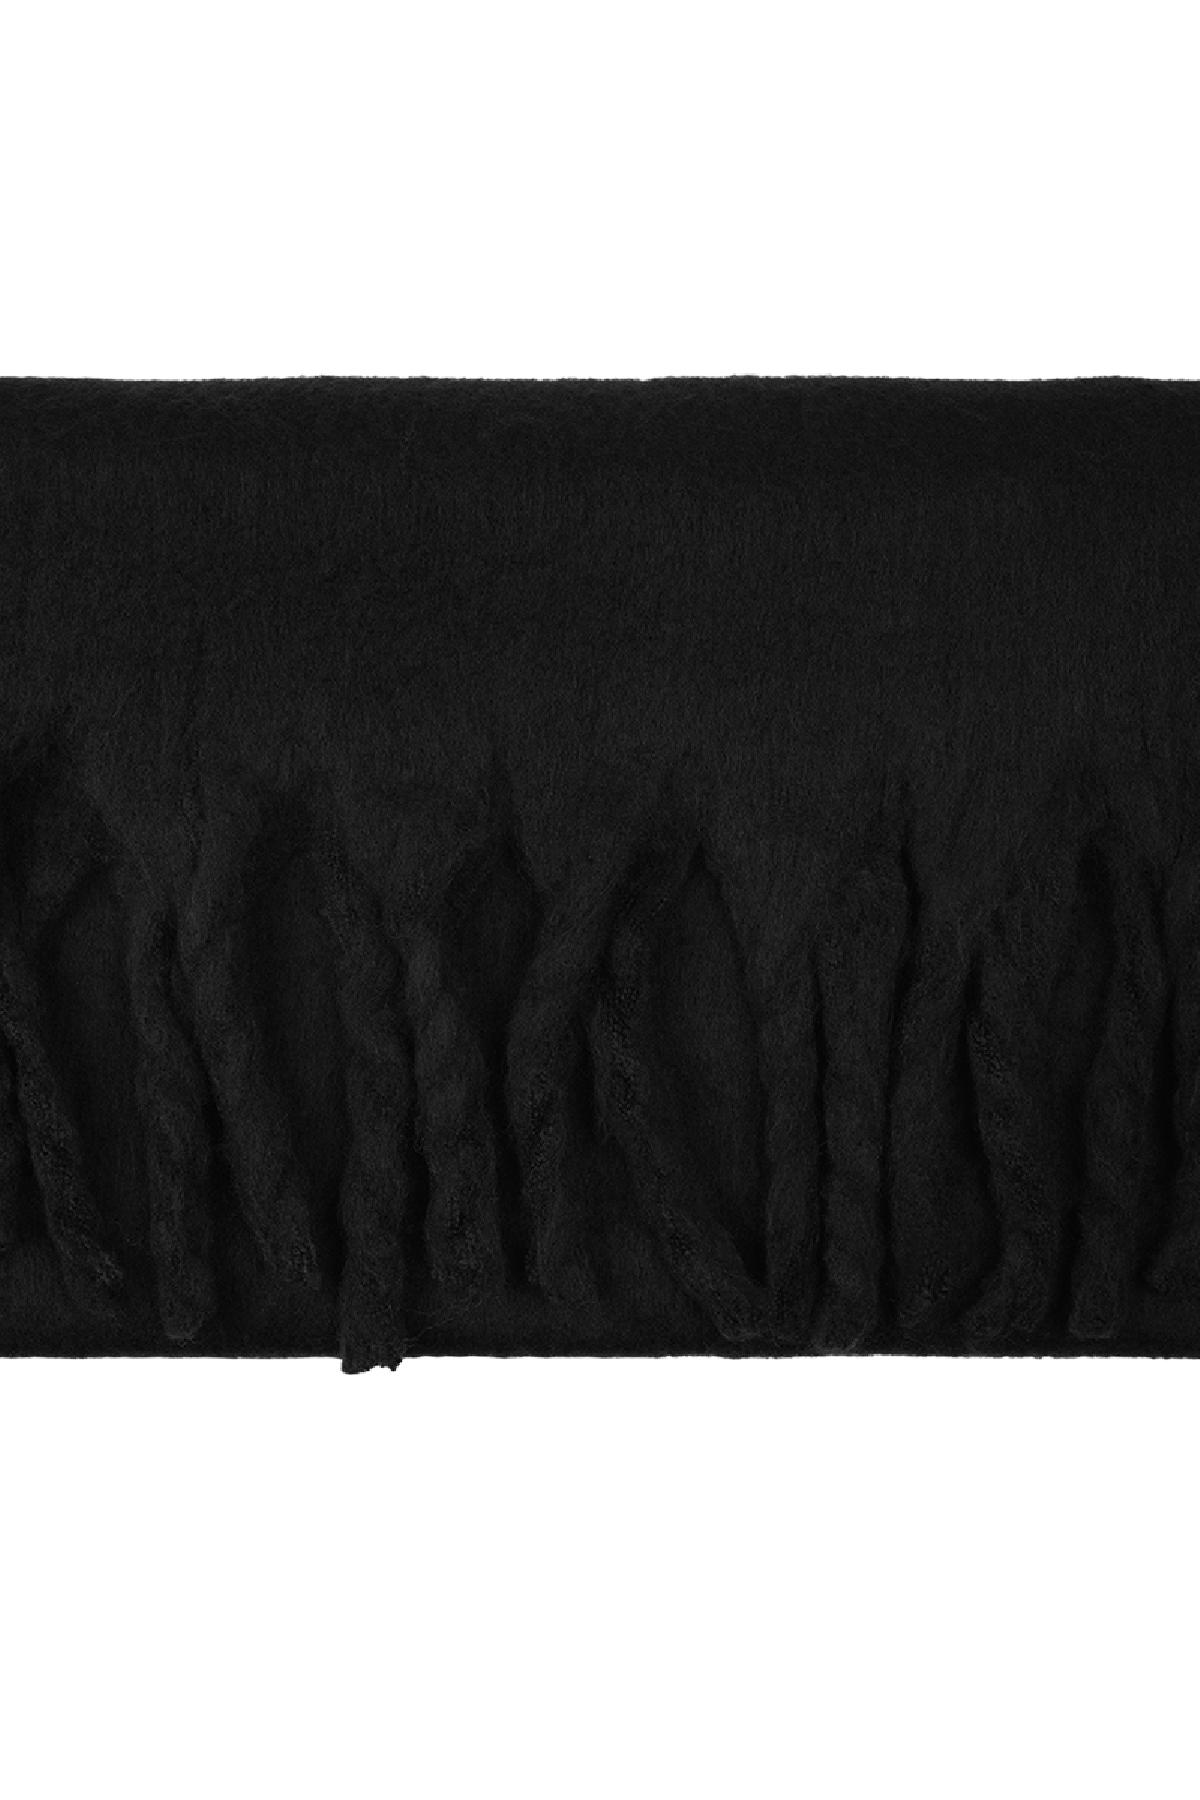 Kışlık eşarp düz renk Black Polyester h5 Resim4